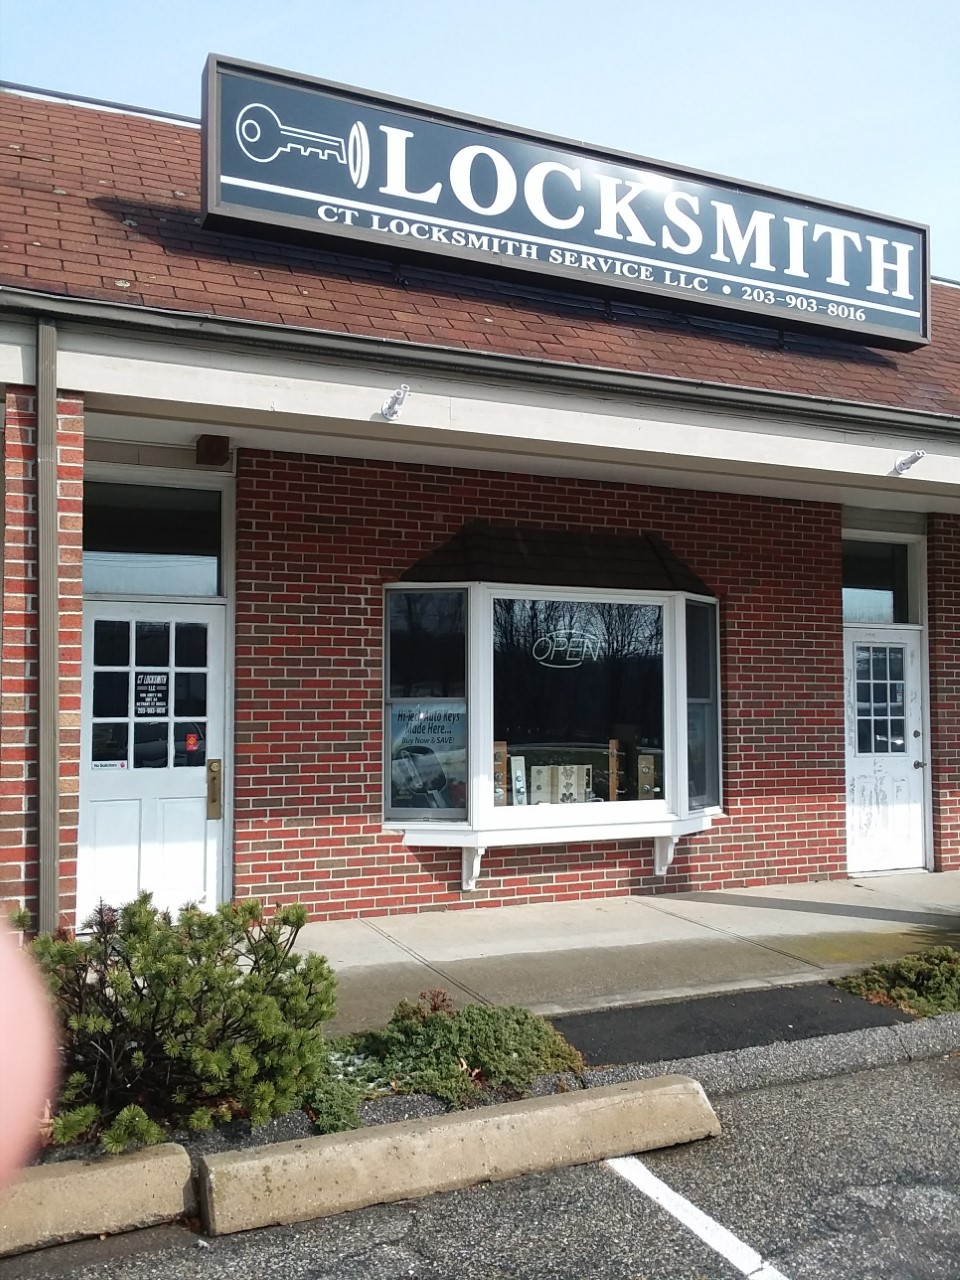 CT Locksmith Service Llc | 696 Amity Rd A4, Bethany, CT 06524 | Phone: (203) 903-8016